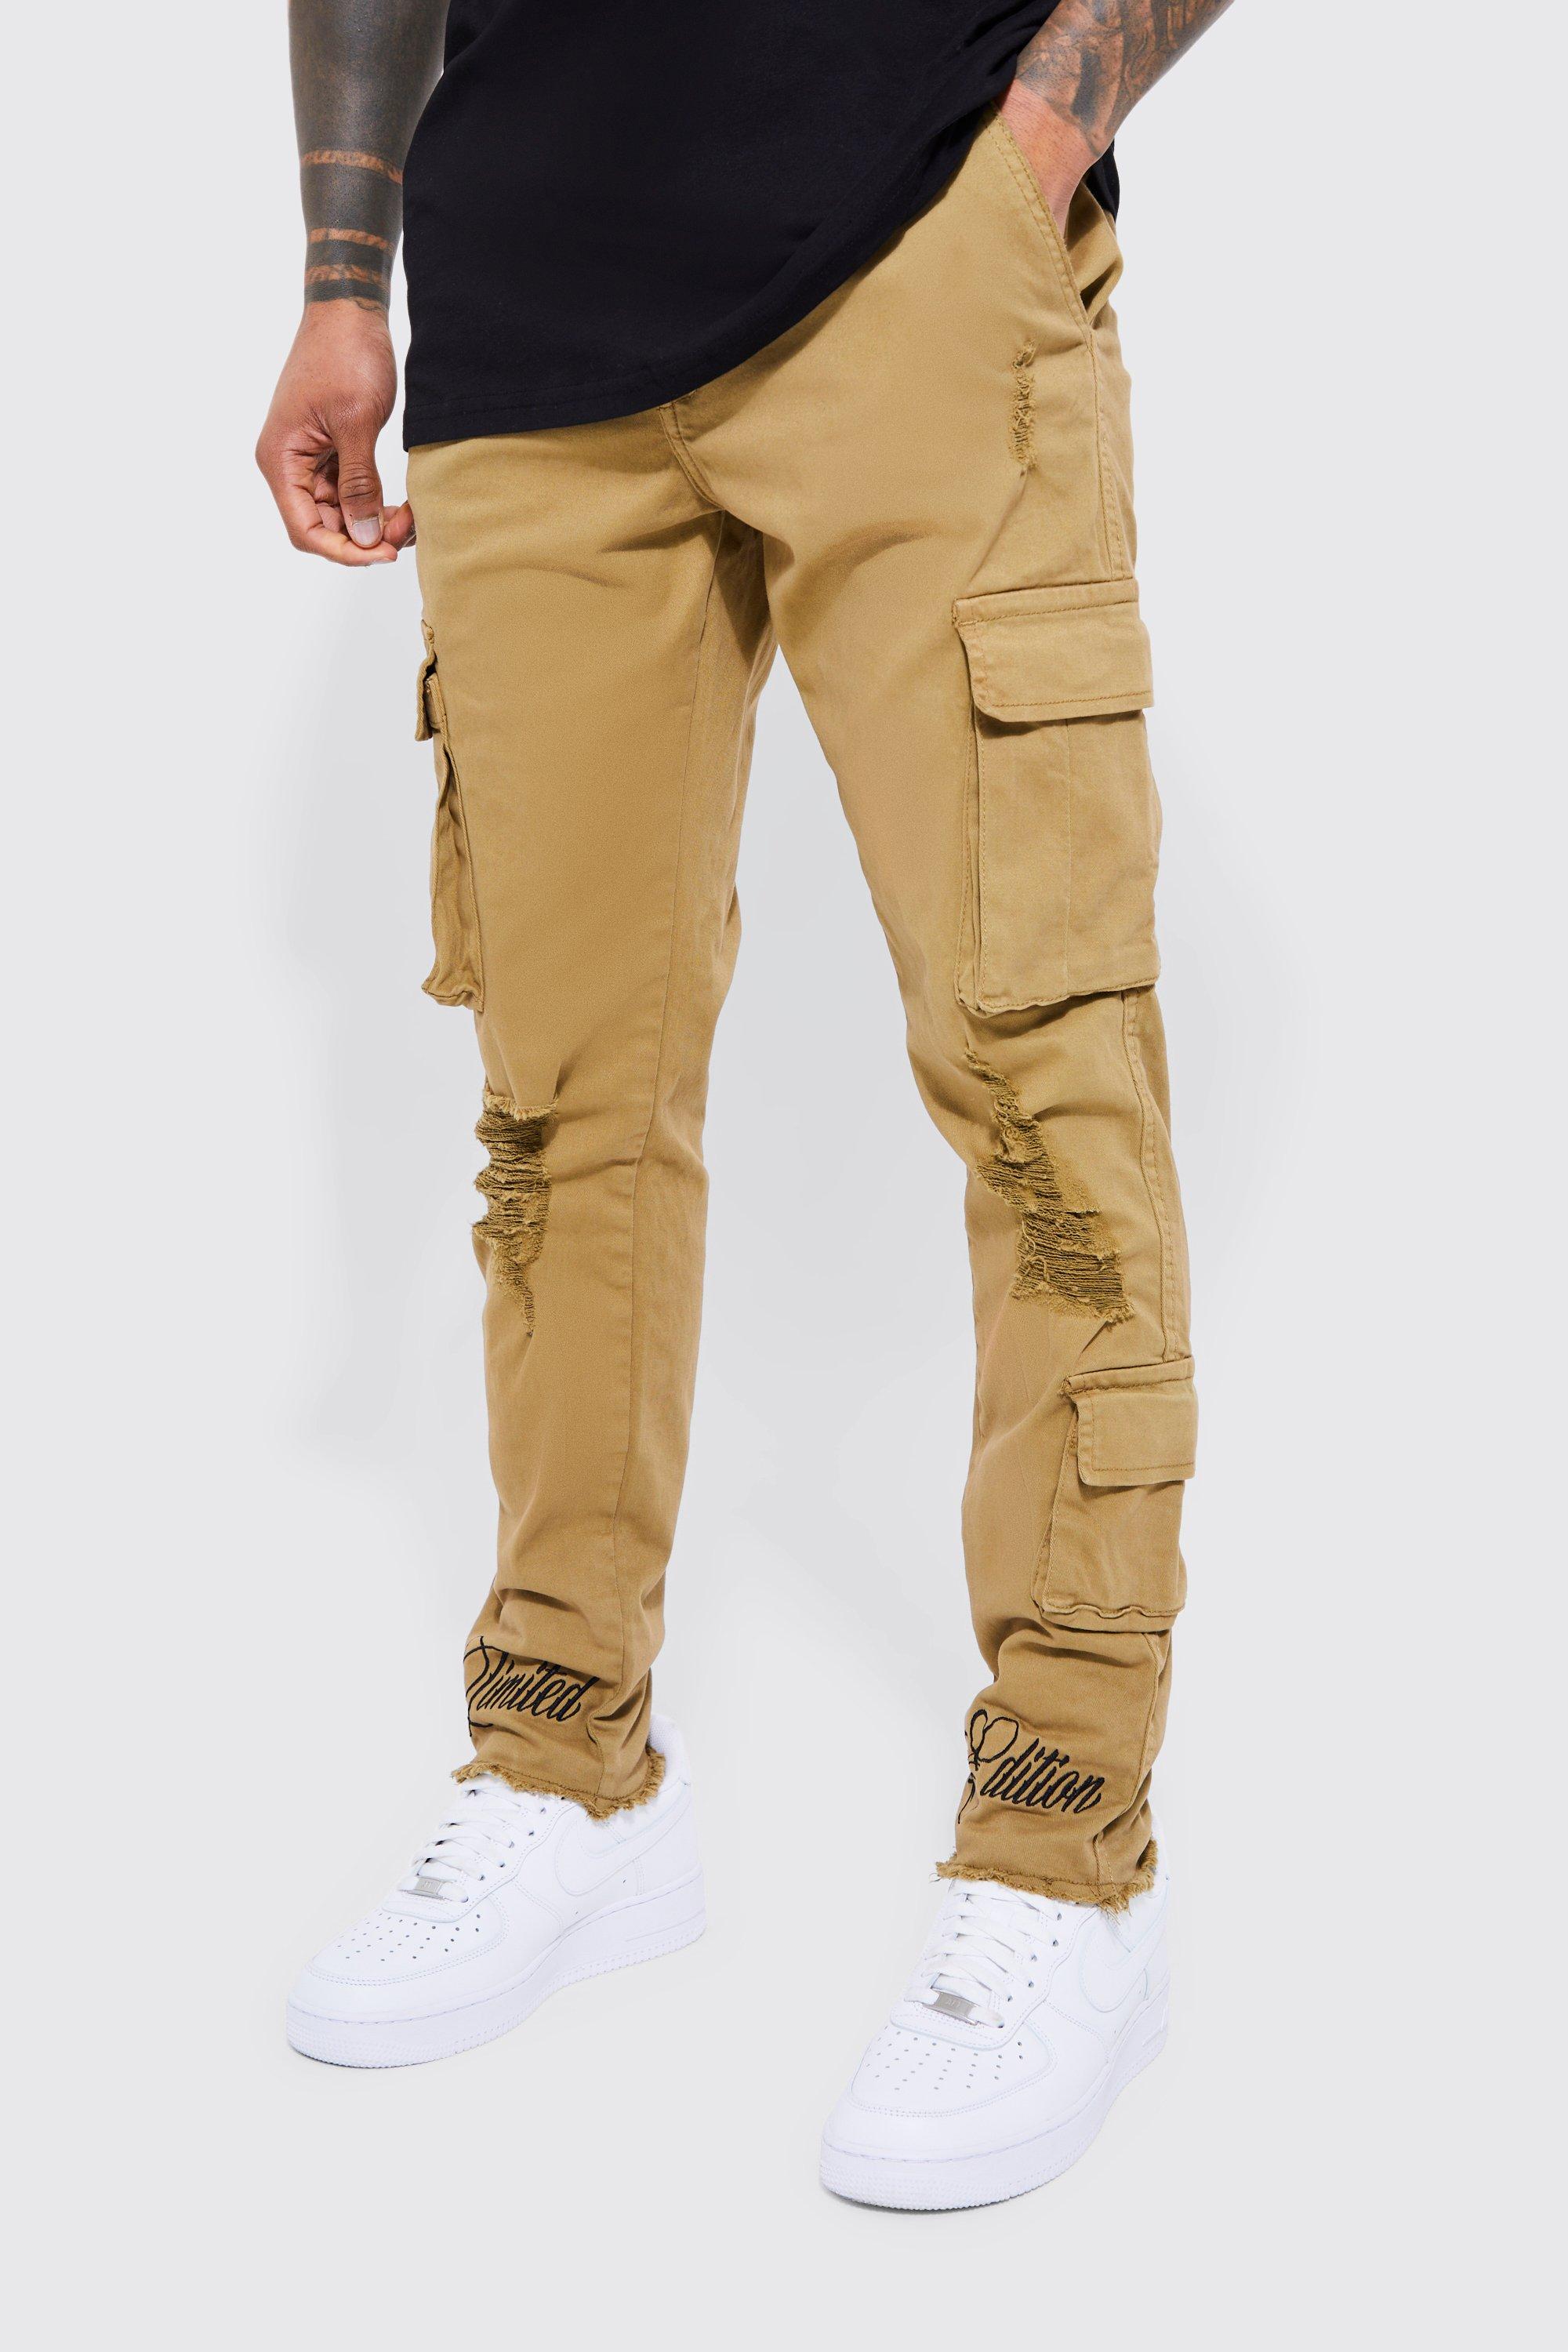 pantalon cargo brodé homme - brun doré - 36, brun doré